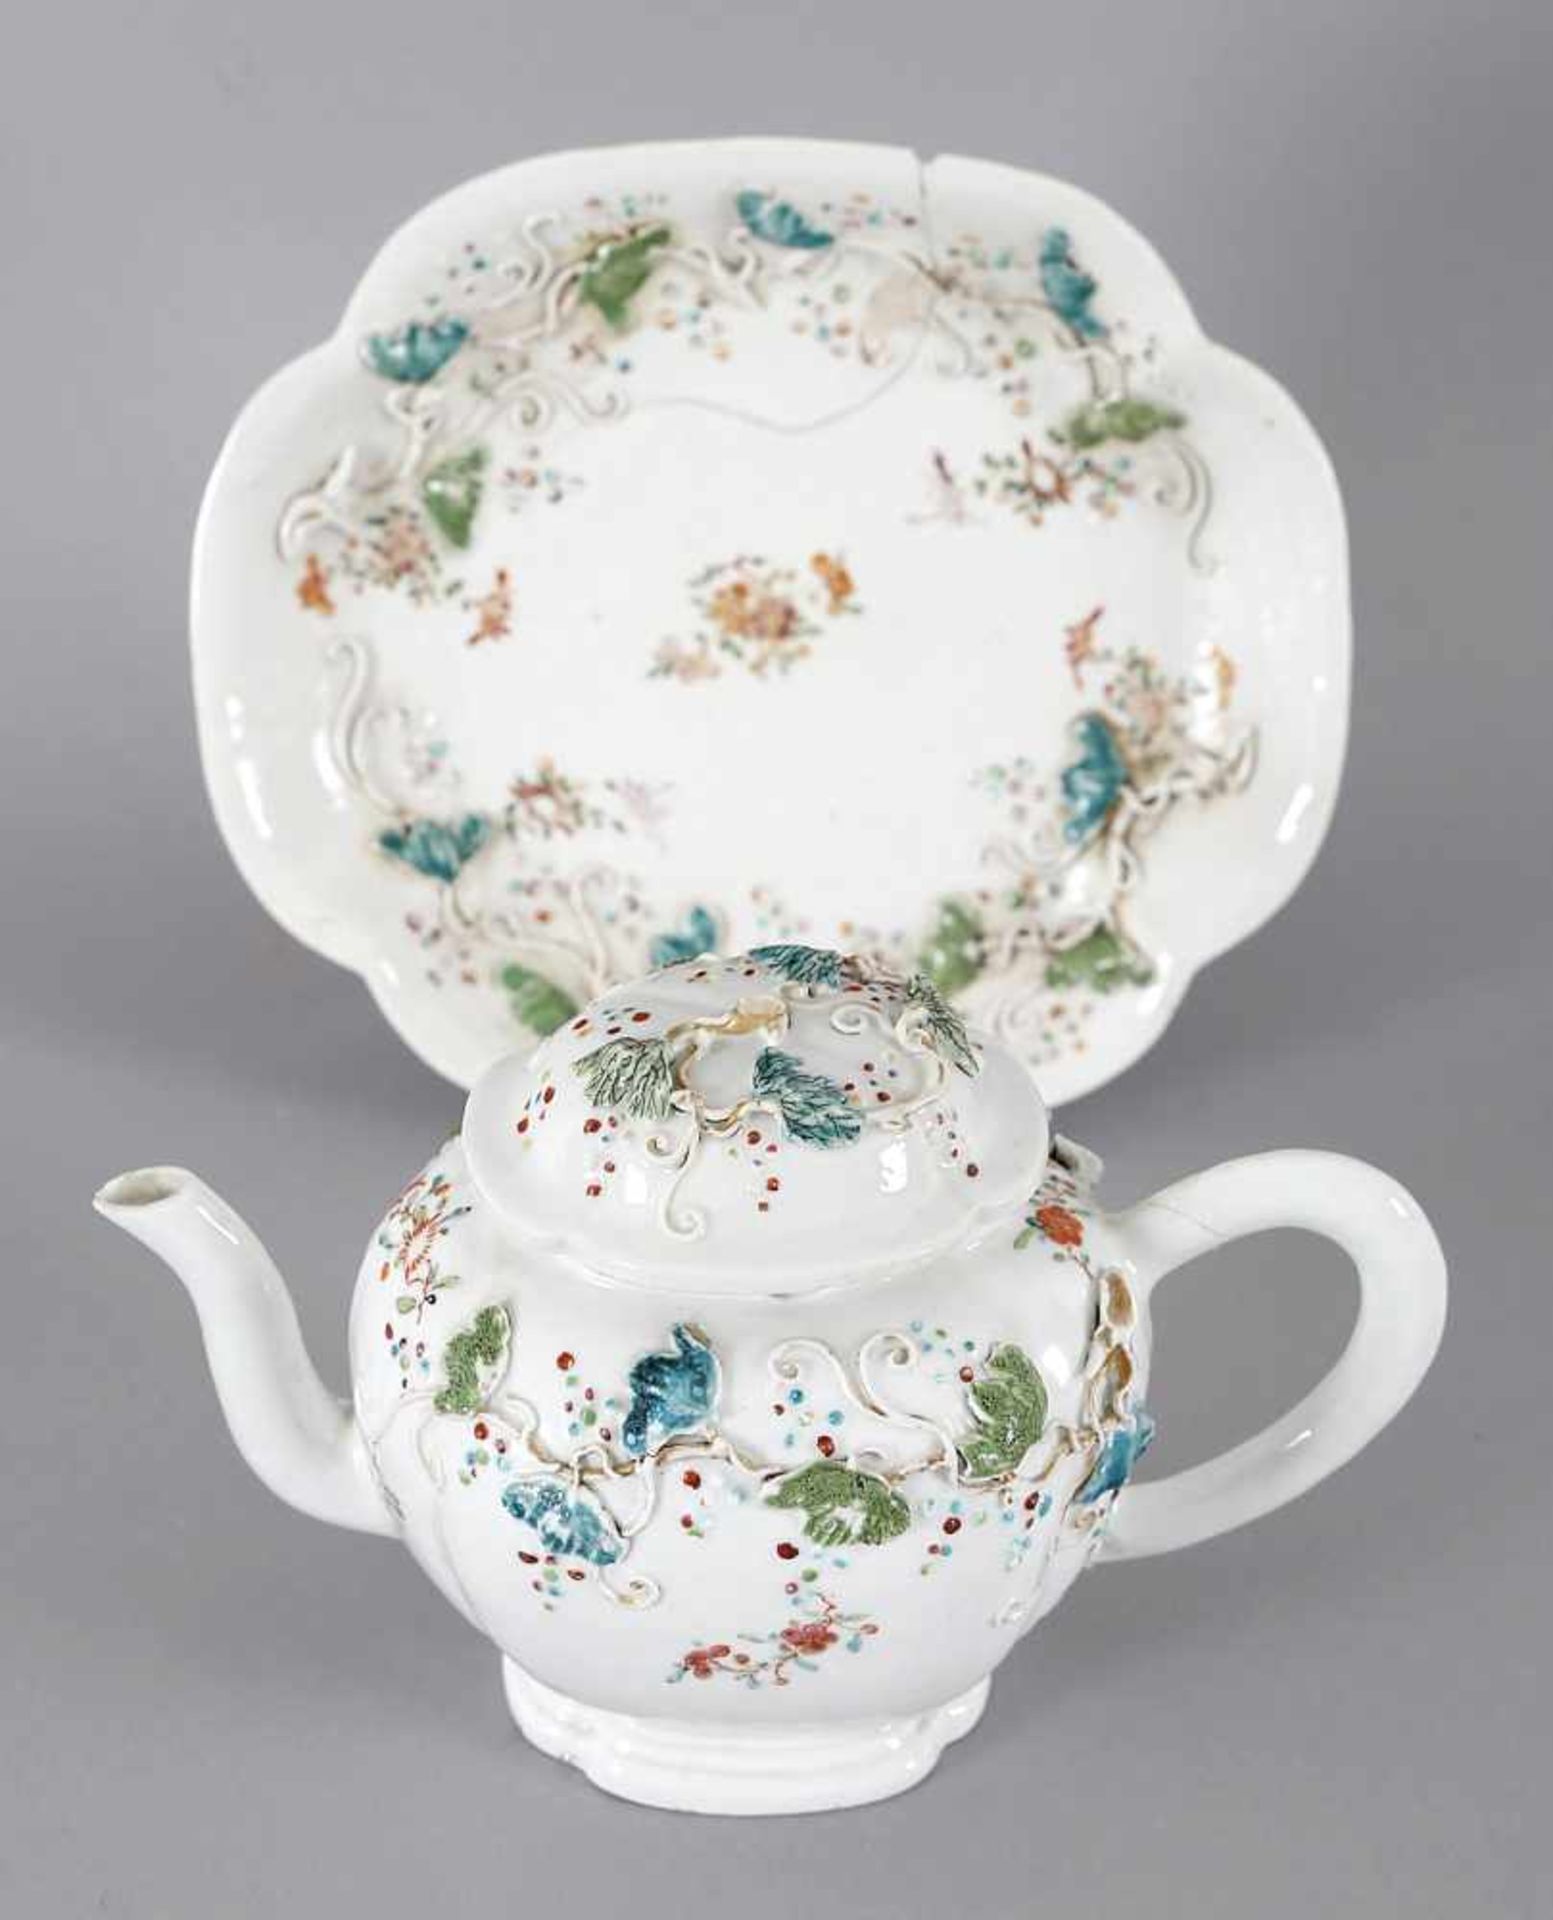 Chinesische Teekanne auf Teller, Porzellan, China, 18. Jh.